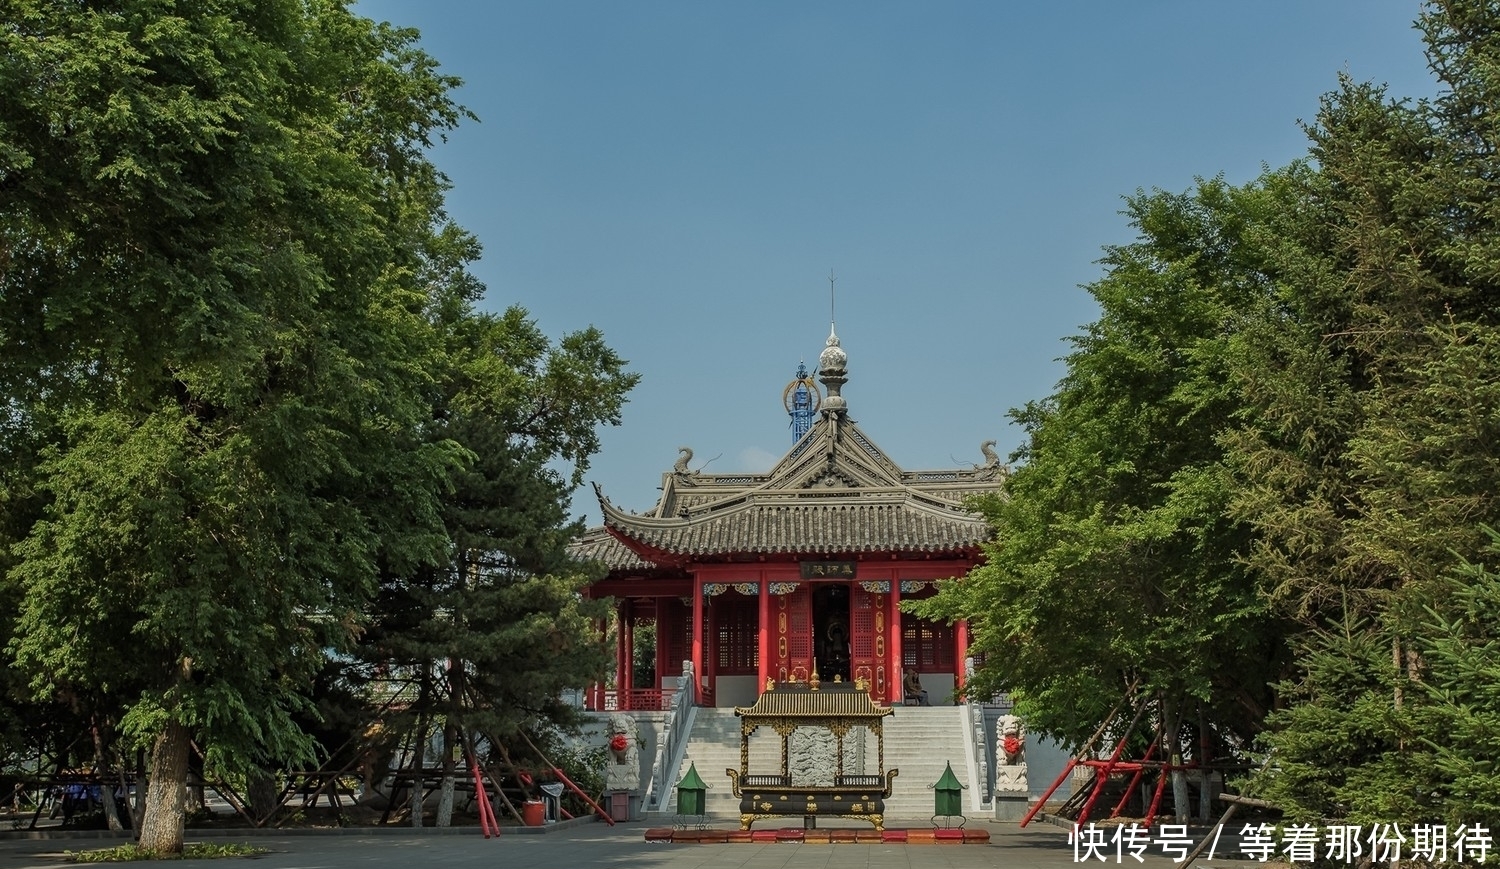 黑龙江香火旺的寺庙，是东三省四大佛教寺院之一，是全国重点寺院